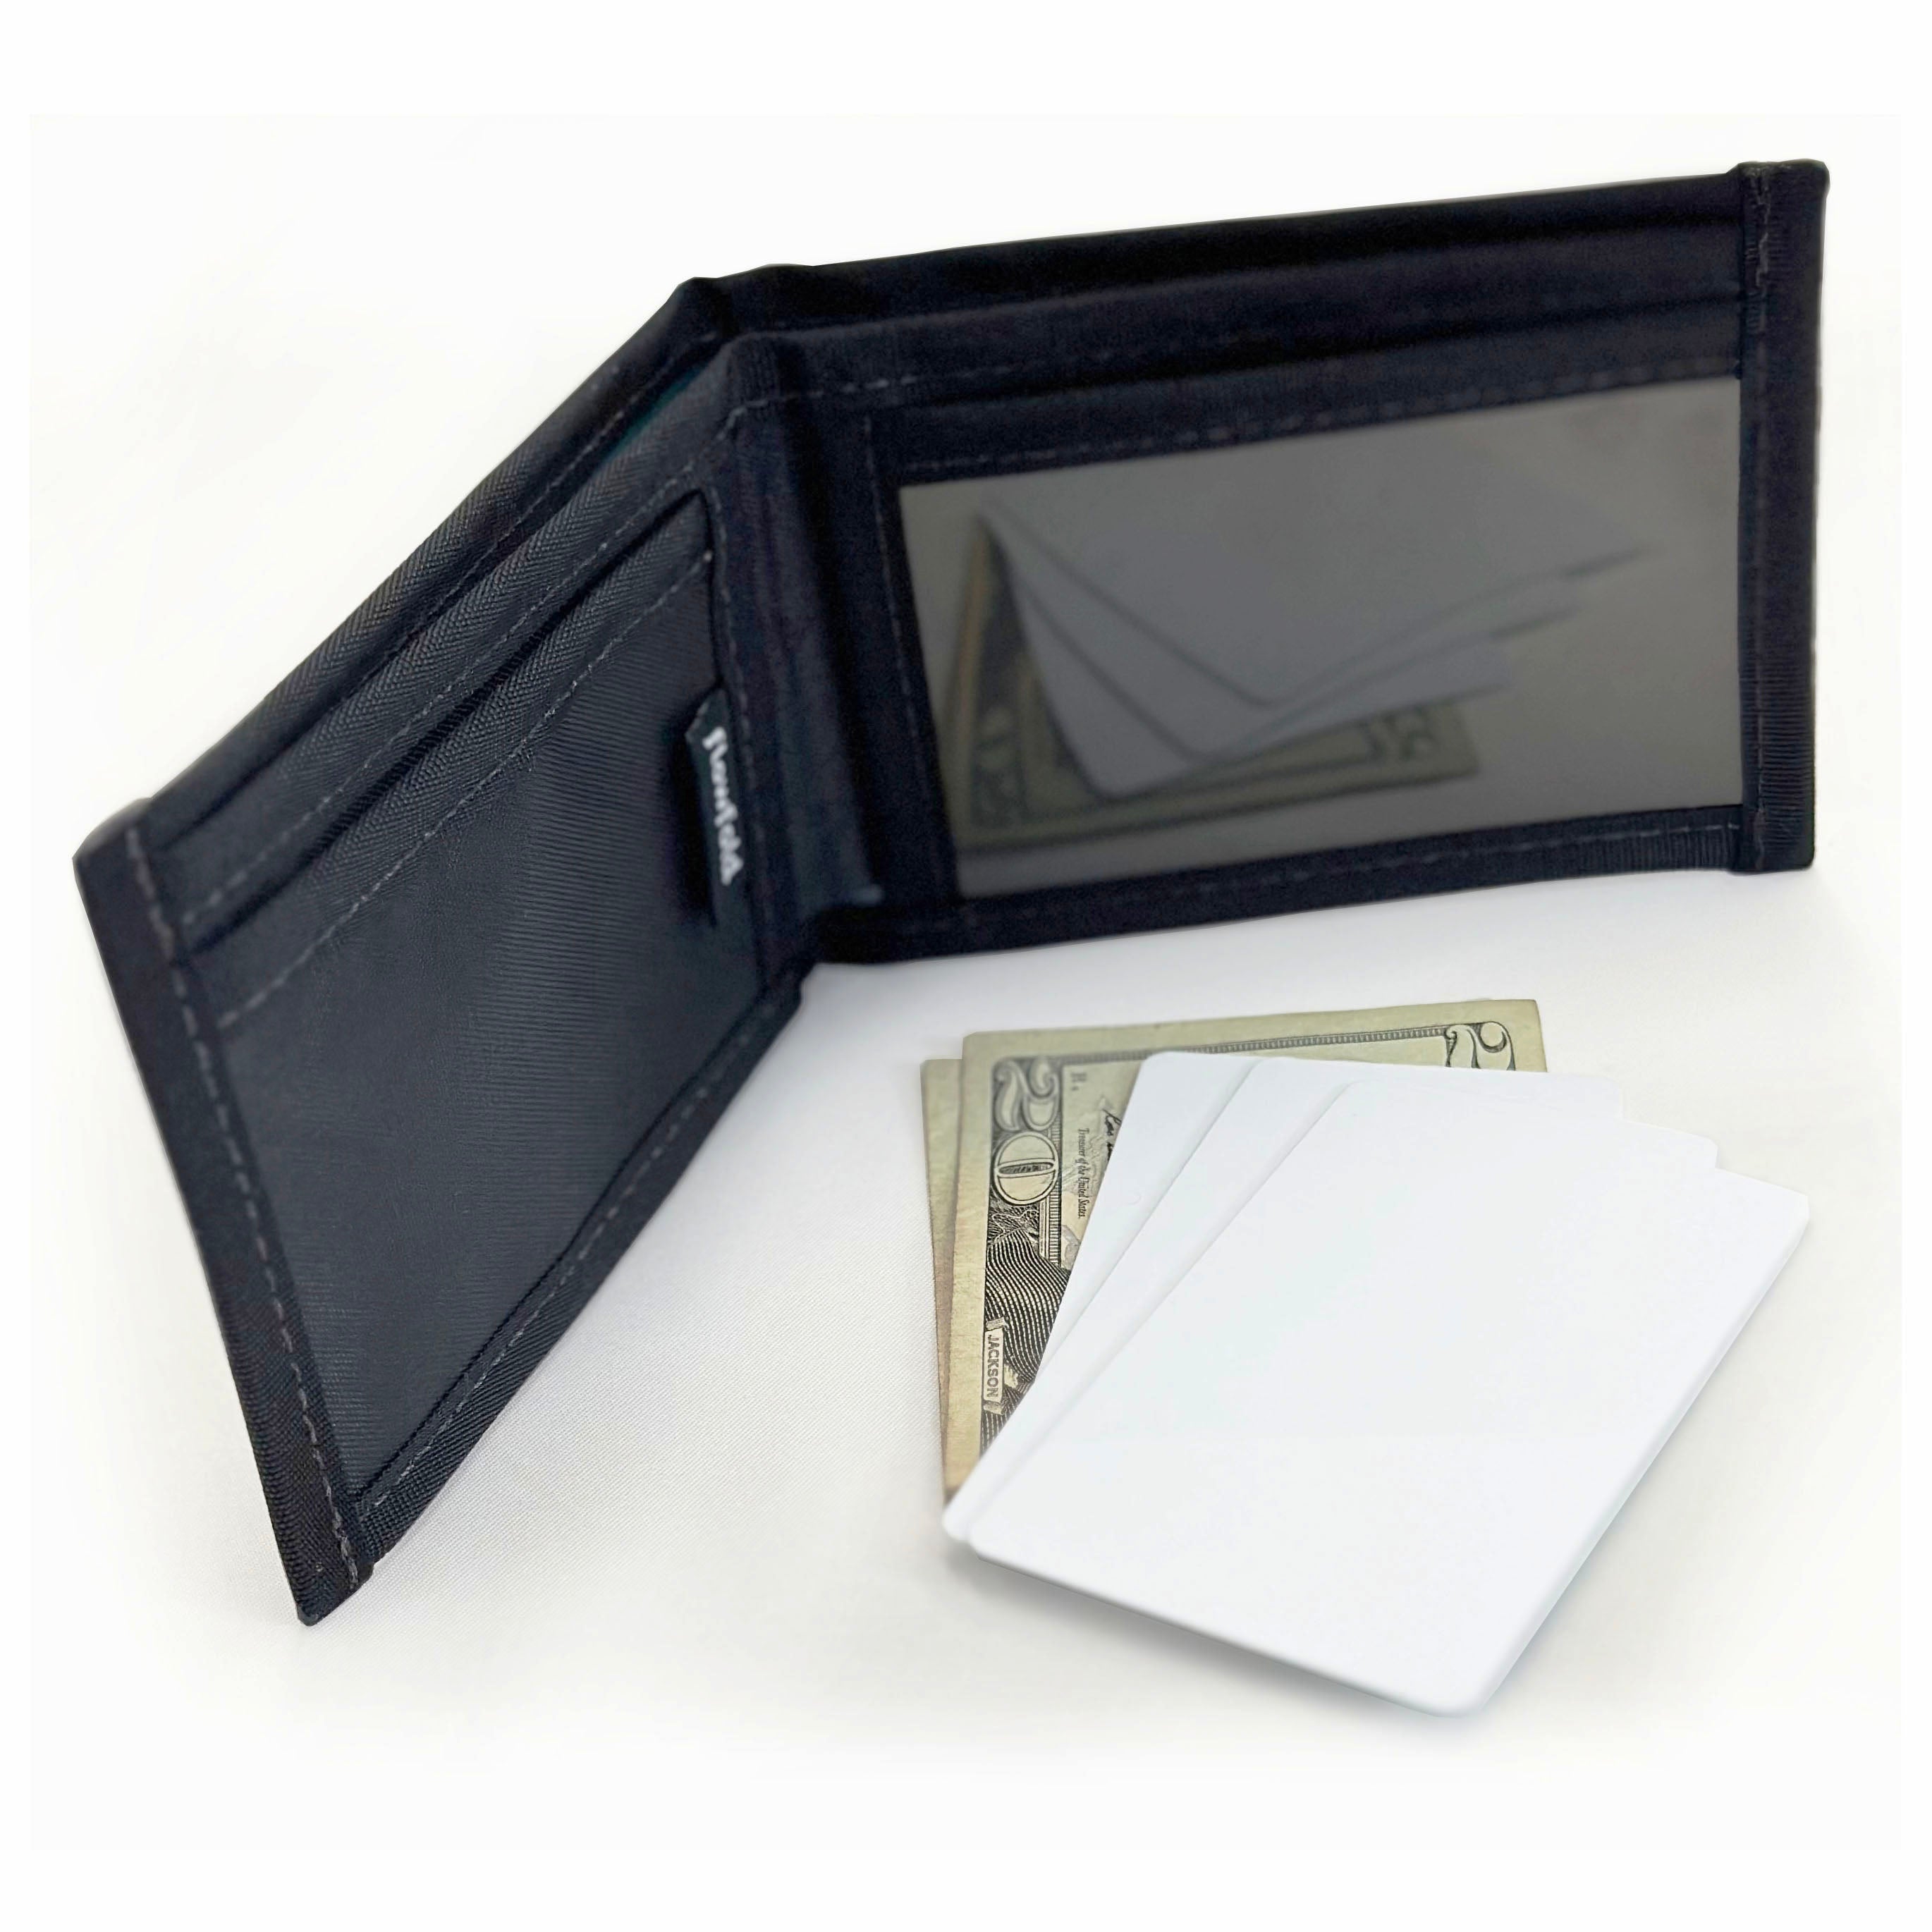 slender wallet inside